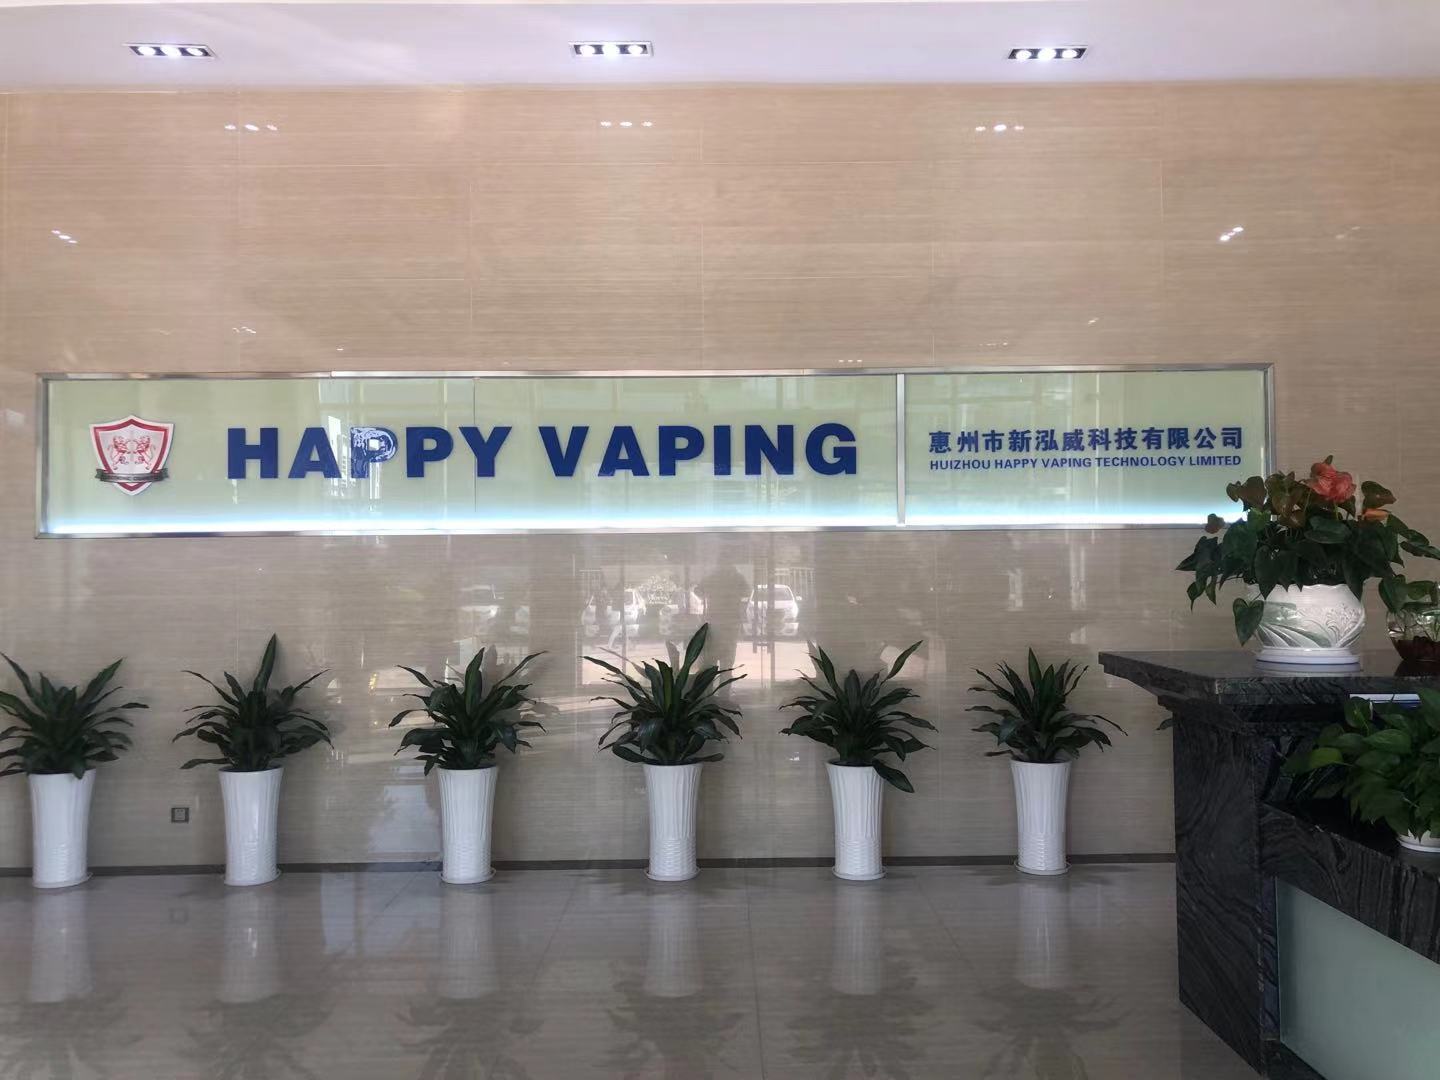 恭祝惠州市新泓威科技有限公司一次性通过WCA验厂